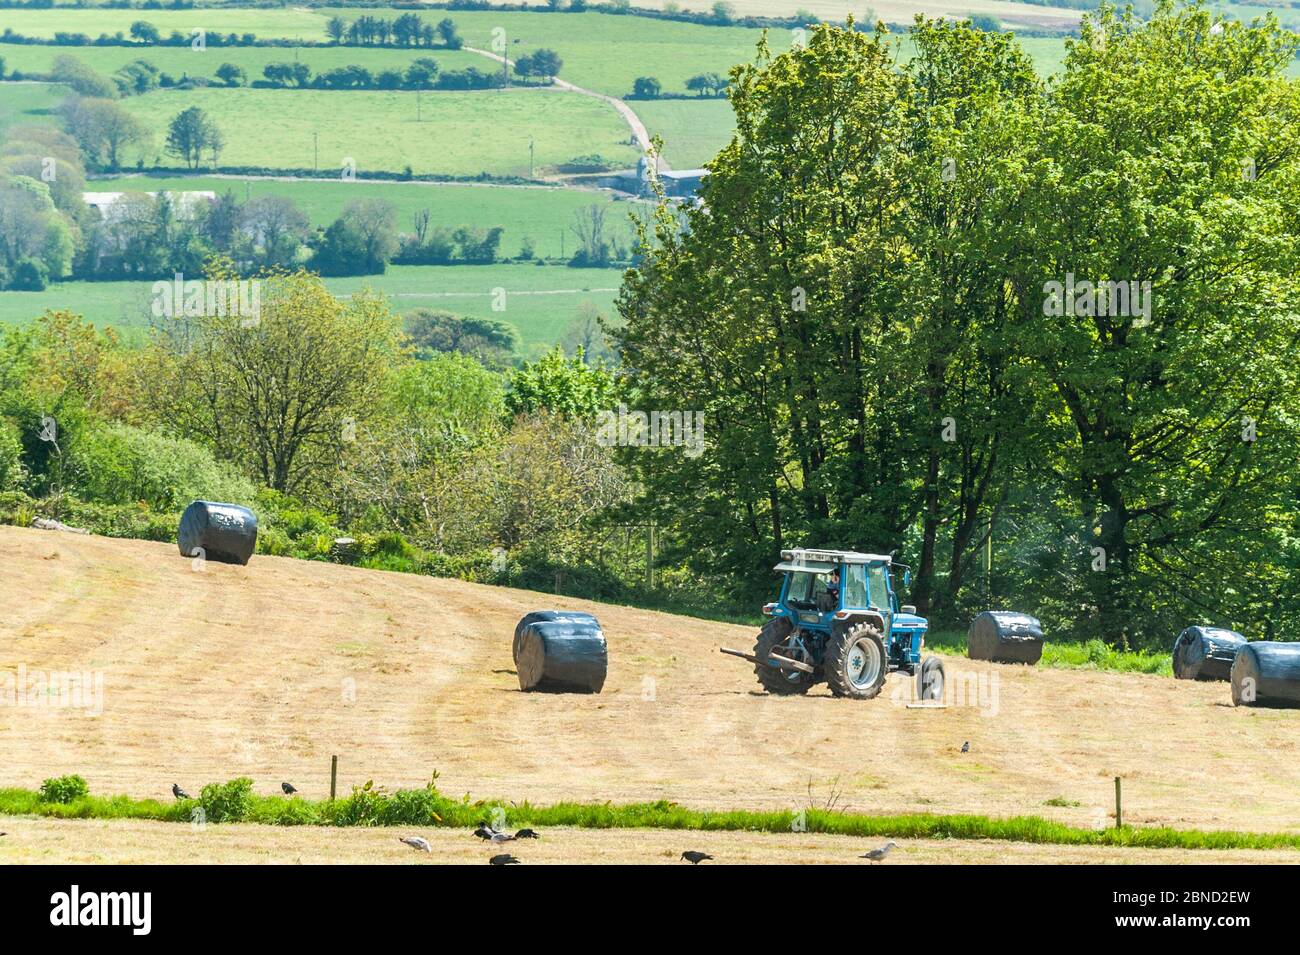 Timoleague, West Cork, Irlande. 14 mai 2020. Un tracteur empile une anse d'ensilage à Timoleague par une chaude journée ensoleillée. L'ensilage sera utilisé pour l'alimentation d'hiver des bovins. Crédit : AG News/Alay Live News Banque D'Images